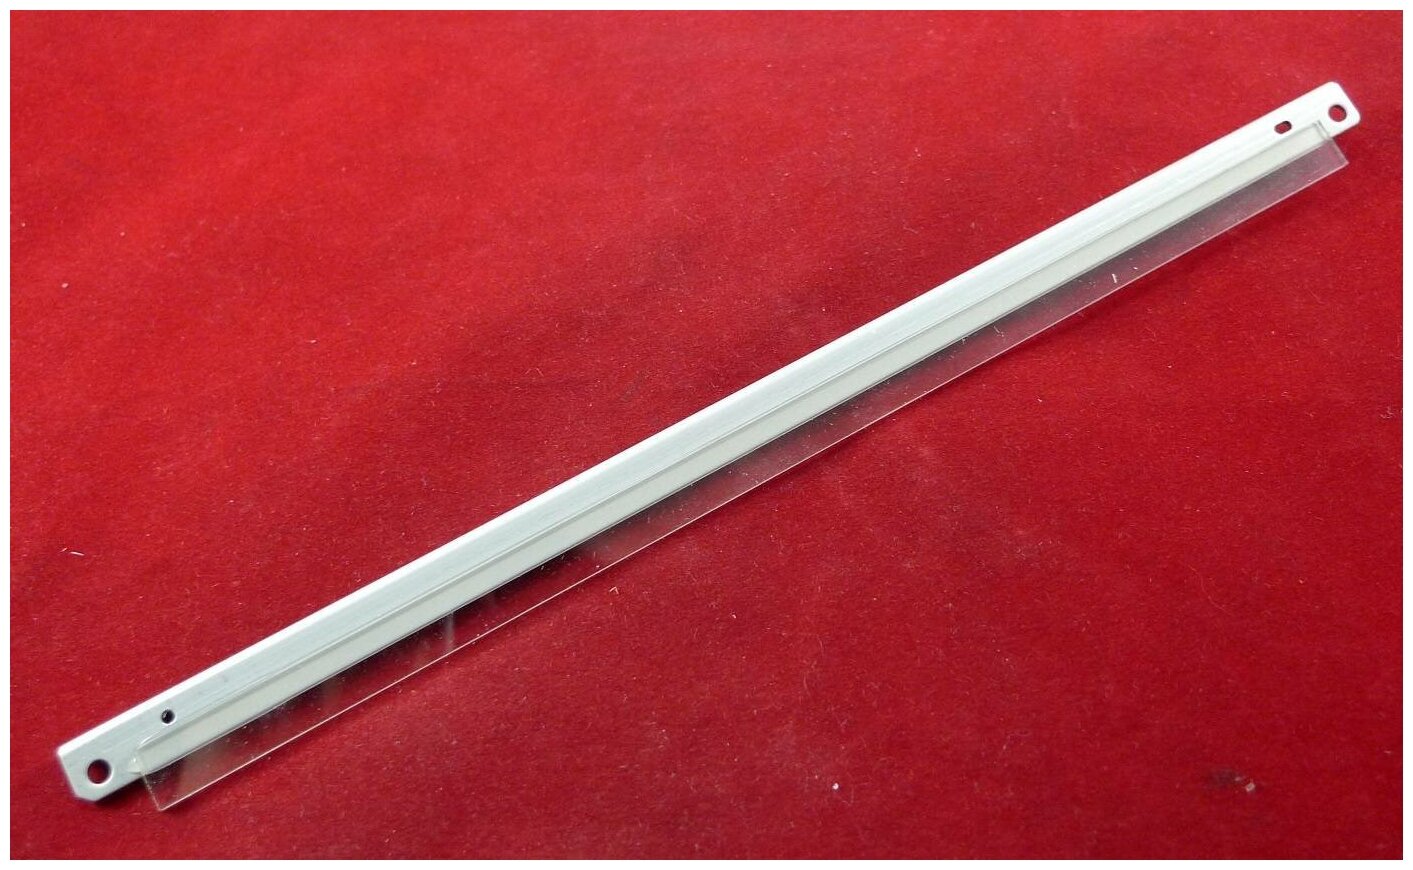 Ракель (Wiper Blade) для Kyocera FS-720/920/1016/1128/1120/1320 (DK-110/130/140/170) ELP Imaging®